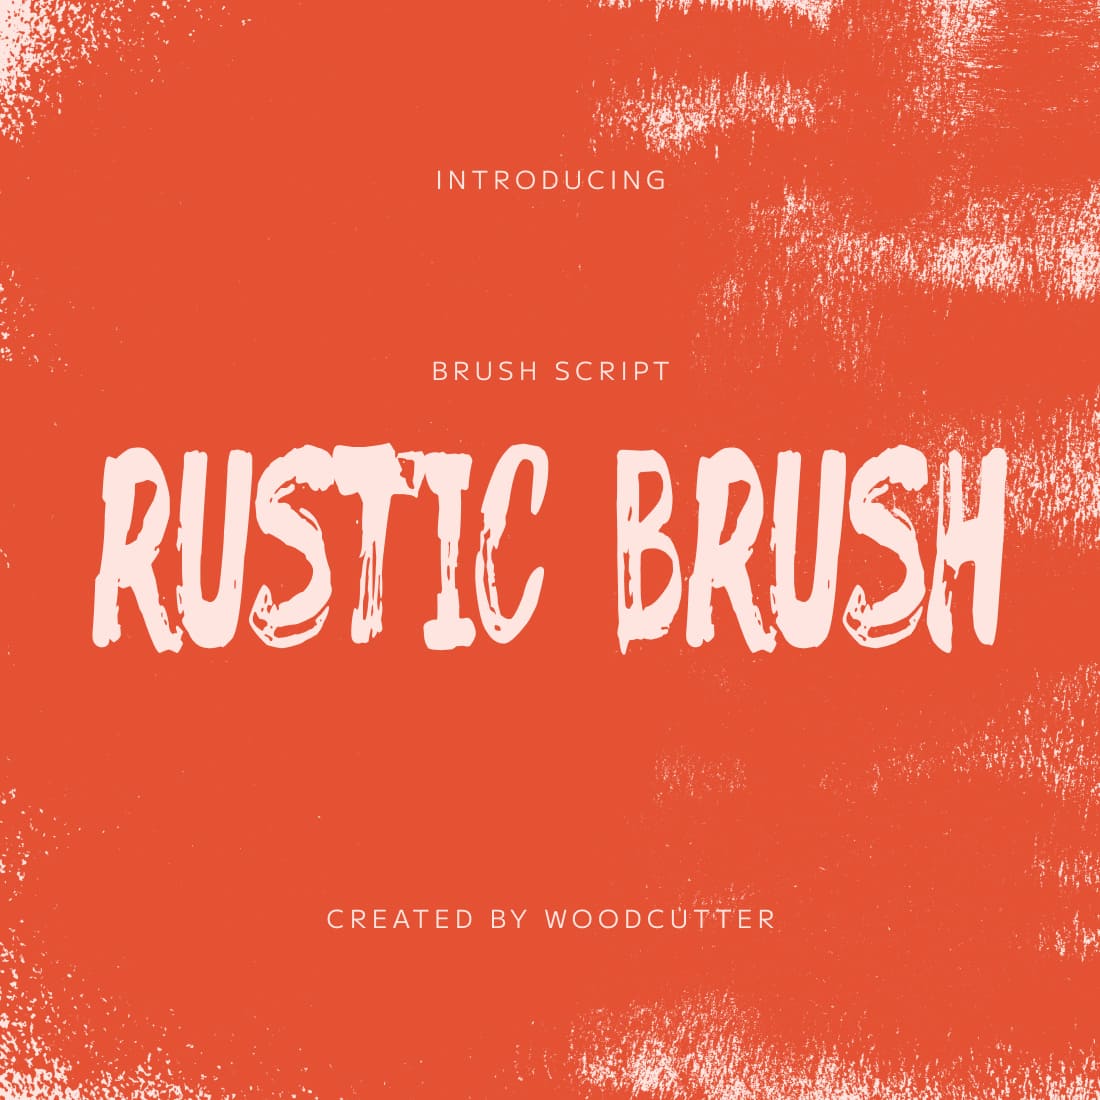 Rustic Brush Free Font main cover.